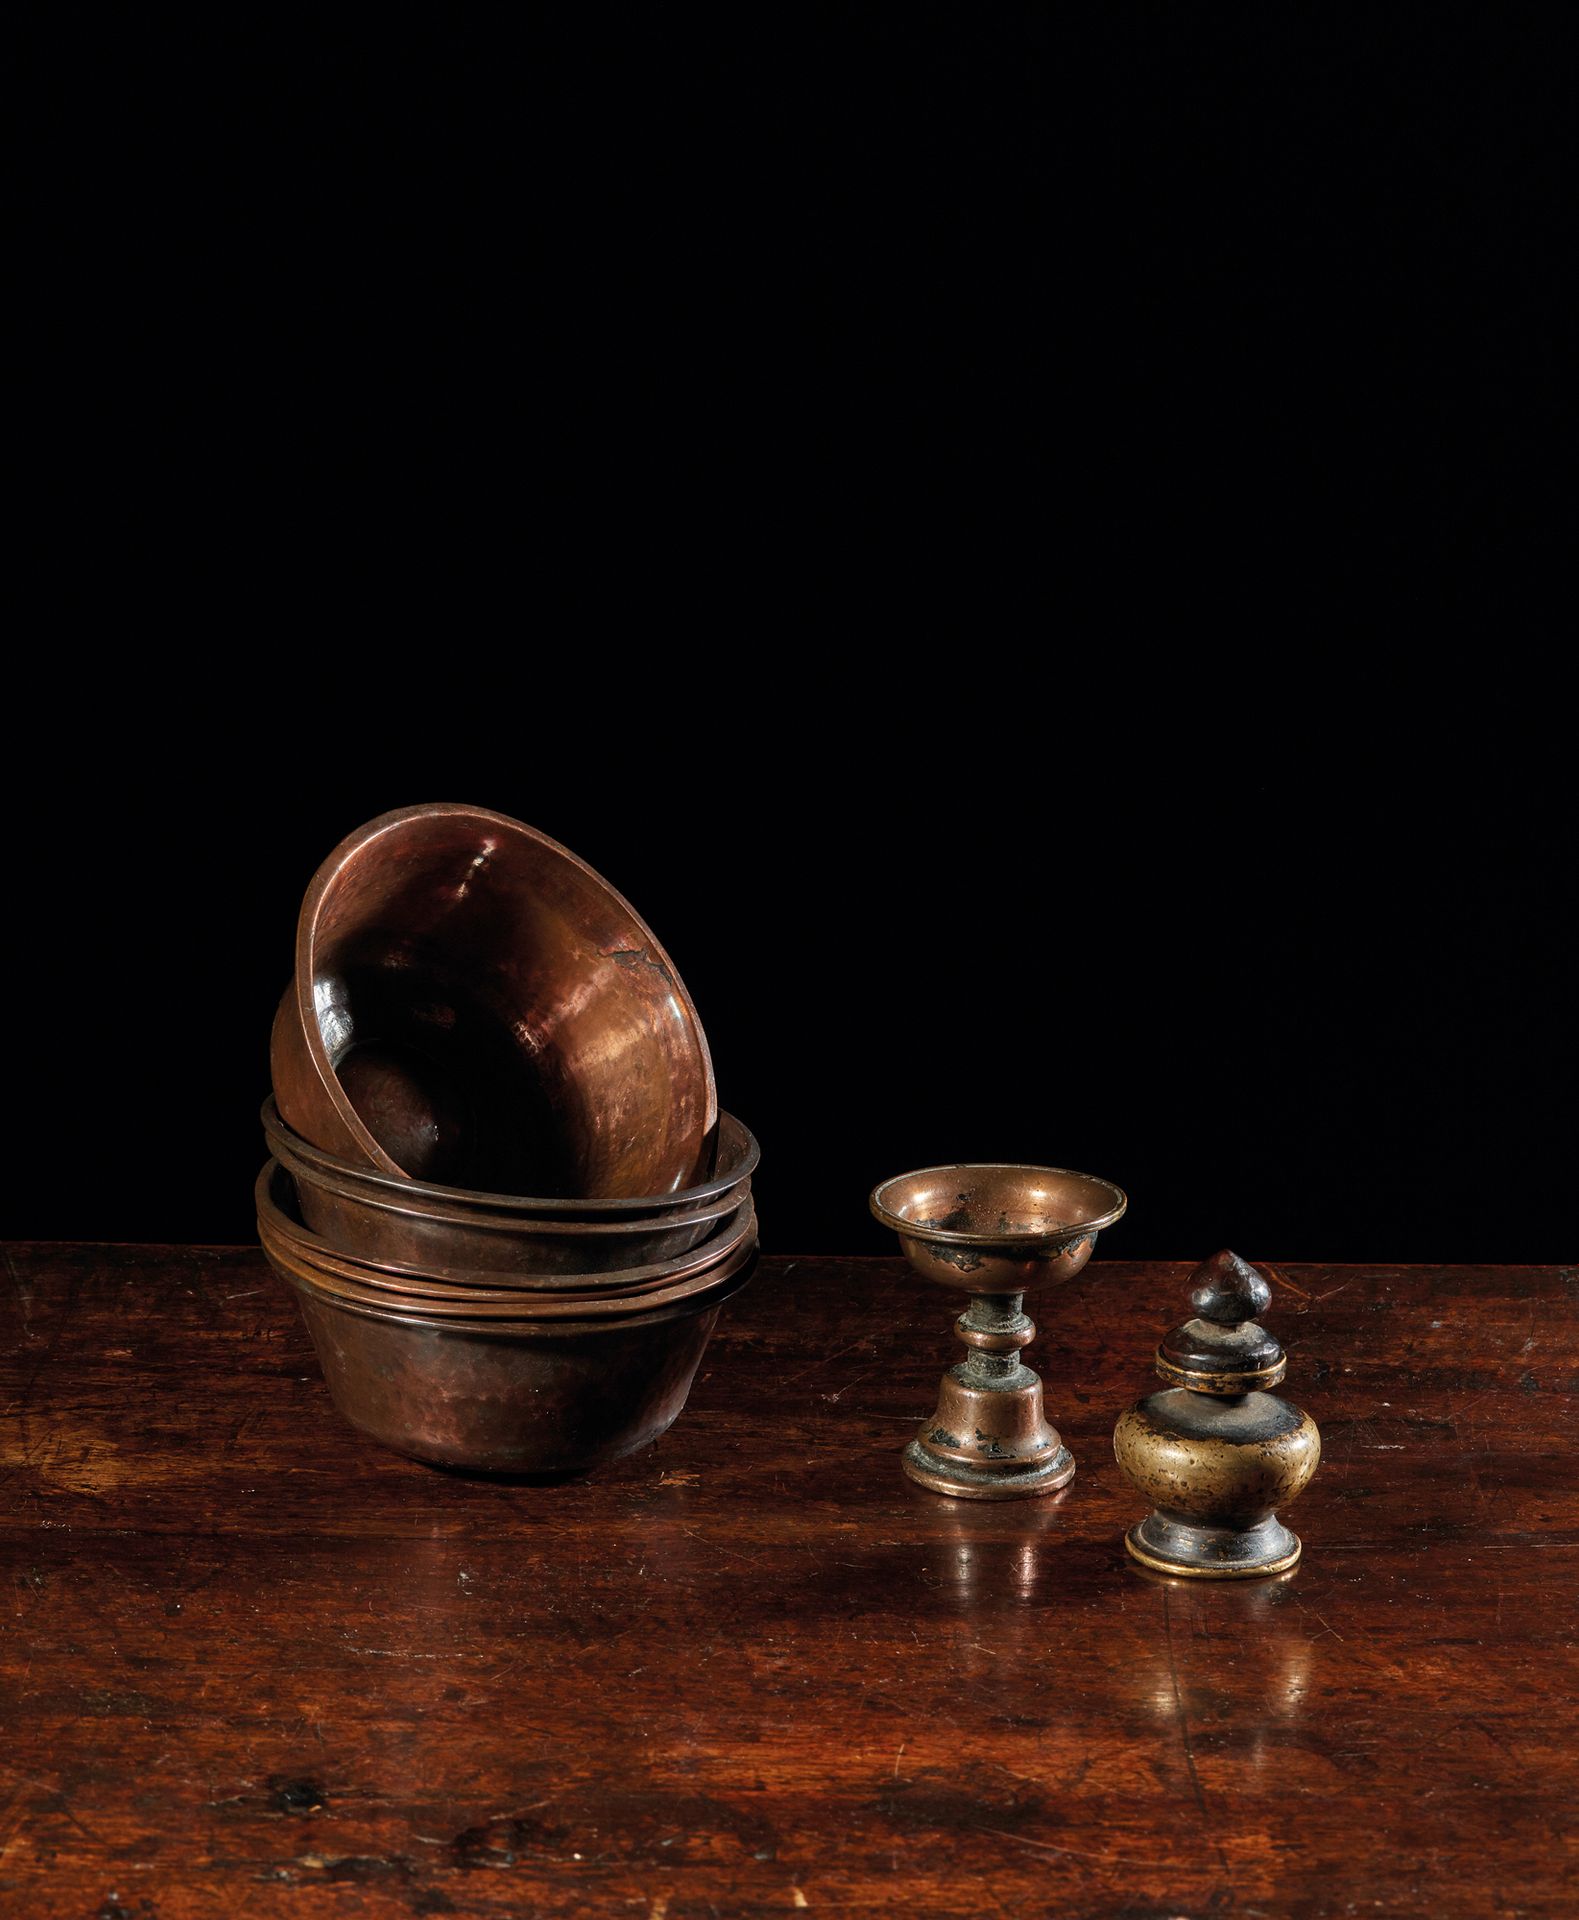 TIBET - XIXe siècle 套装包括七个铜碗，一个铜黄油灯和一个黄铜香水瓶（灯的边缘有修复）
碗直径10.2厘米，灯高6厘米，瓶高6厘米。